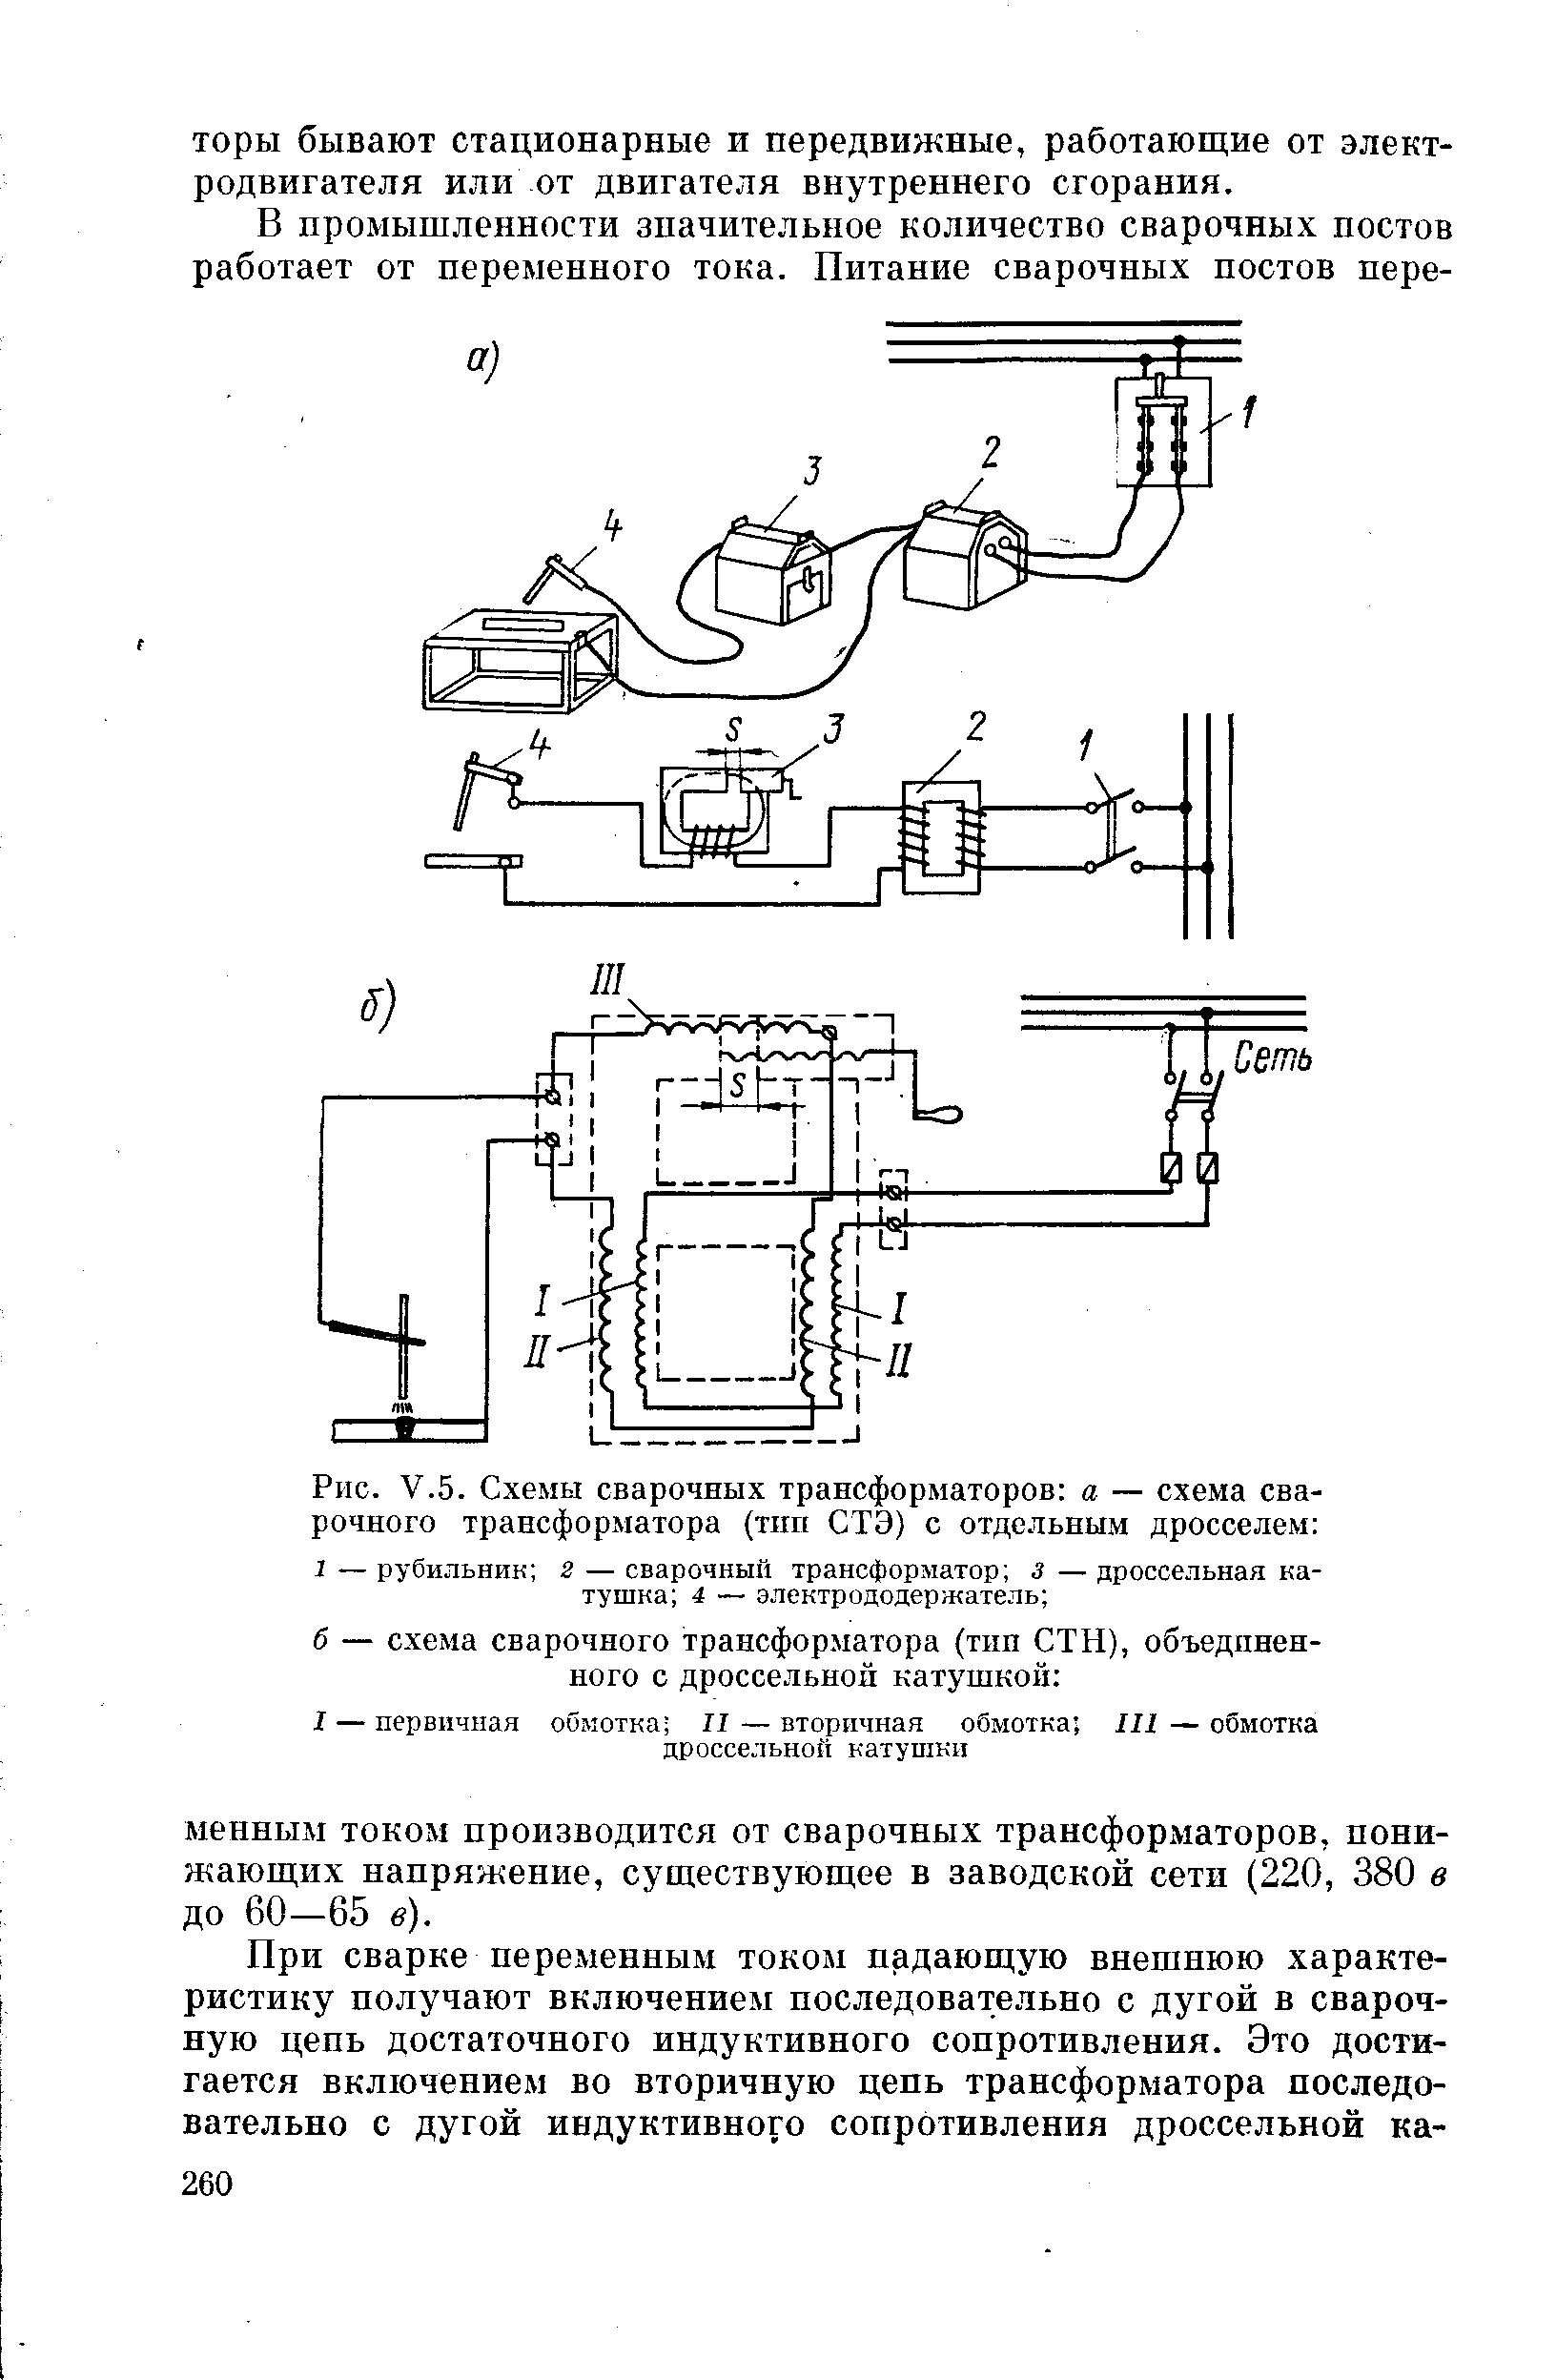 Рис. V.5. Схемы сварочных трансформаторов а — схема сварочного трансформатора (тип СТЭ) с отдельным дросселем 
